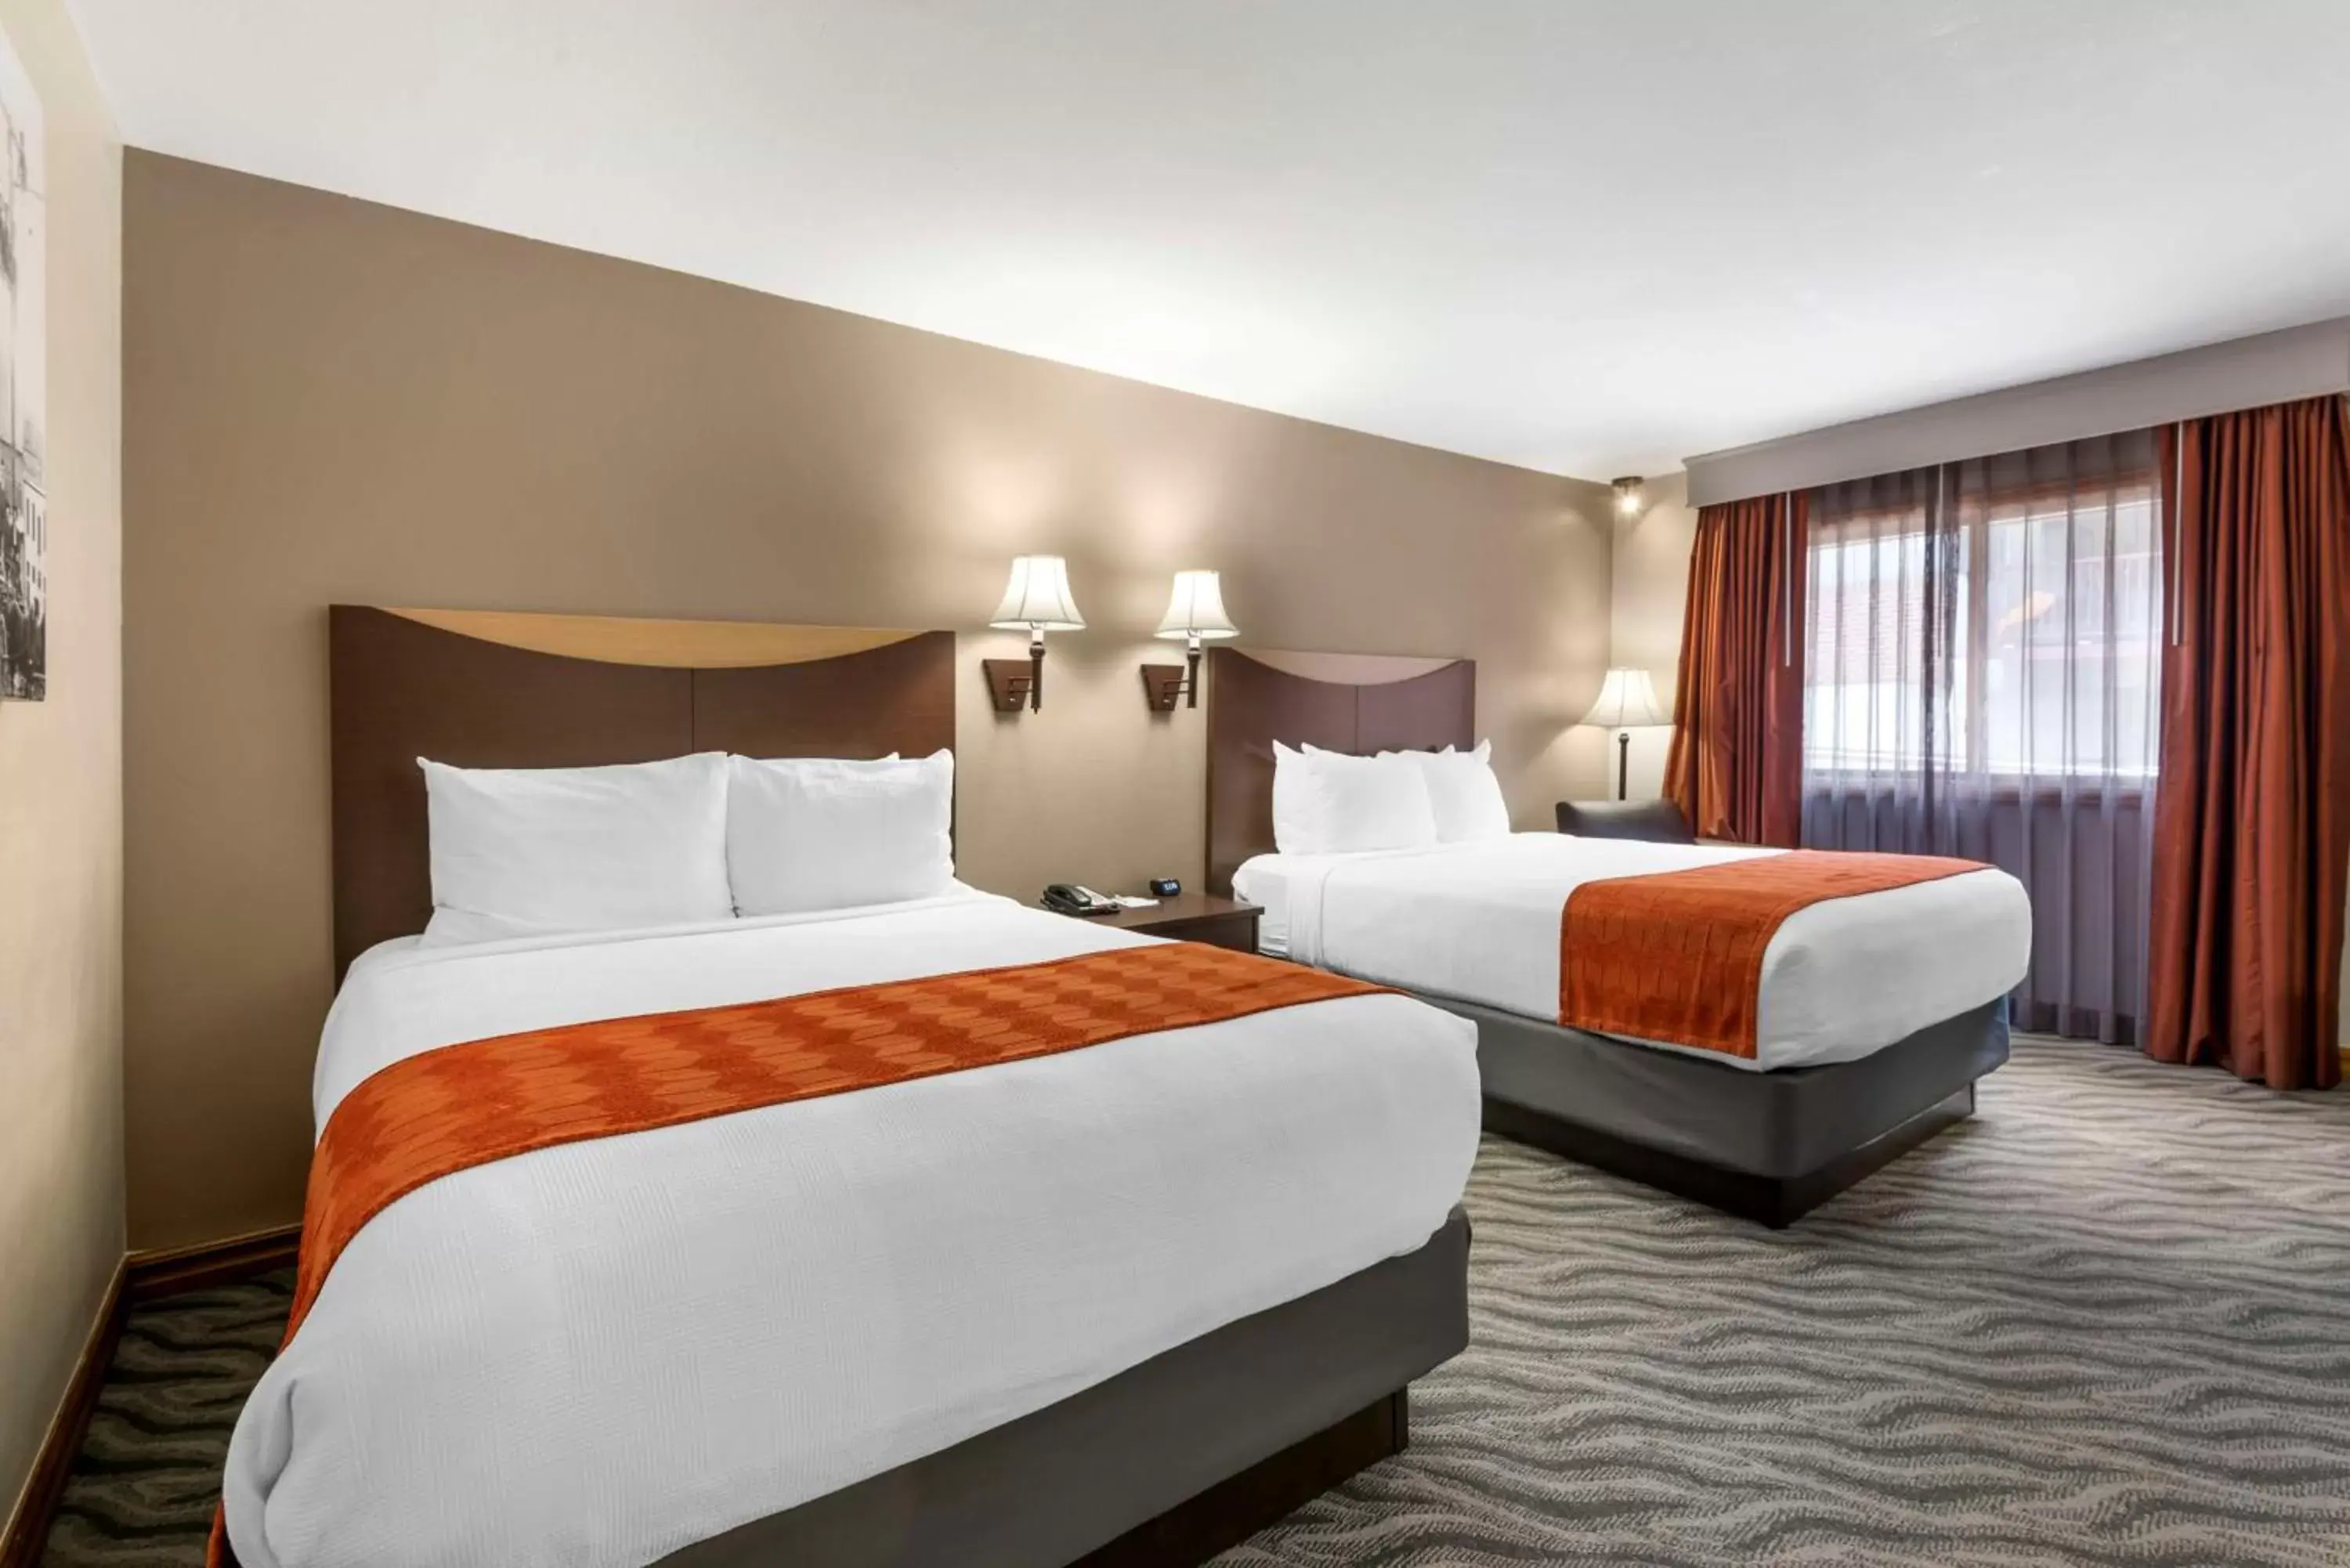 Bedroom, Bed in Best Western Plus Rio Grande Inn